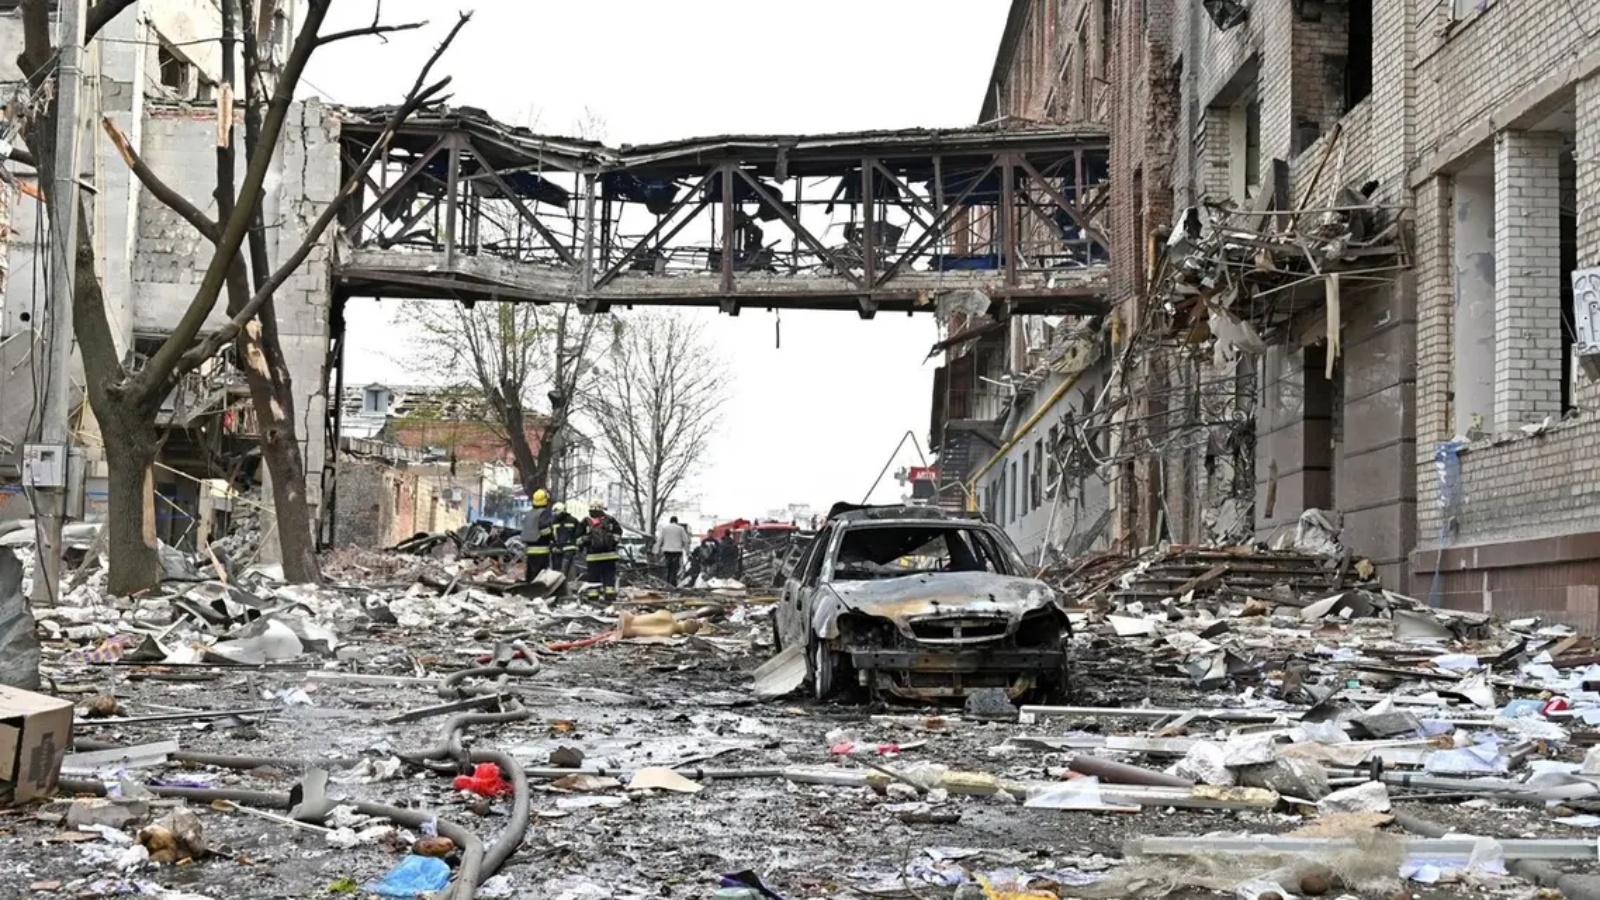 عمال الإنقاذ بين حطام المباني التي دمرت بعد القصف في مدينة خاركيف الأوكرانية في 16 أبريل 2022